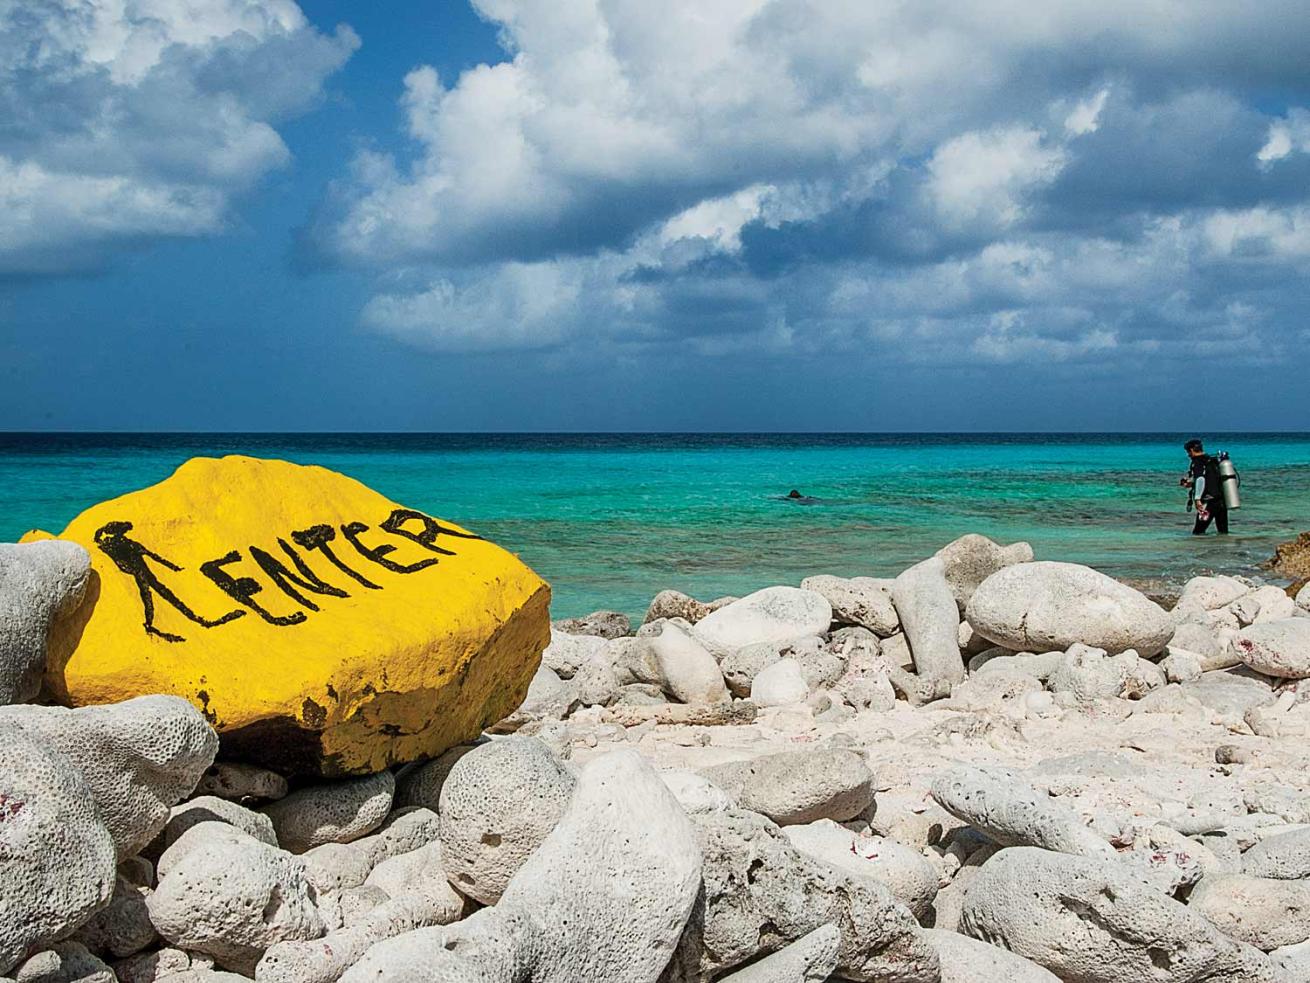 Painted stones mark Bonaire shore-diving sites